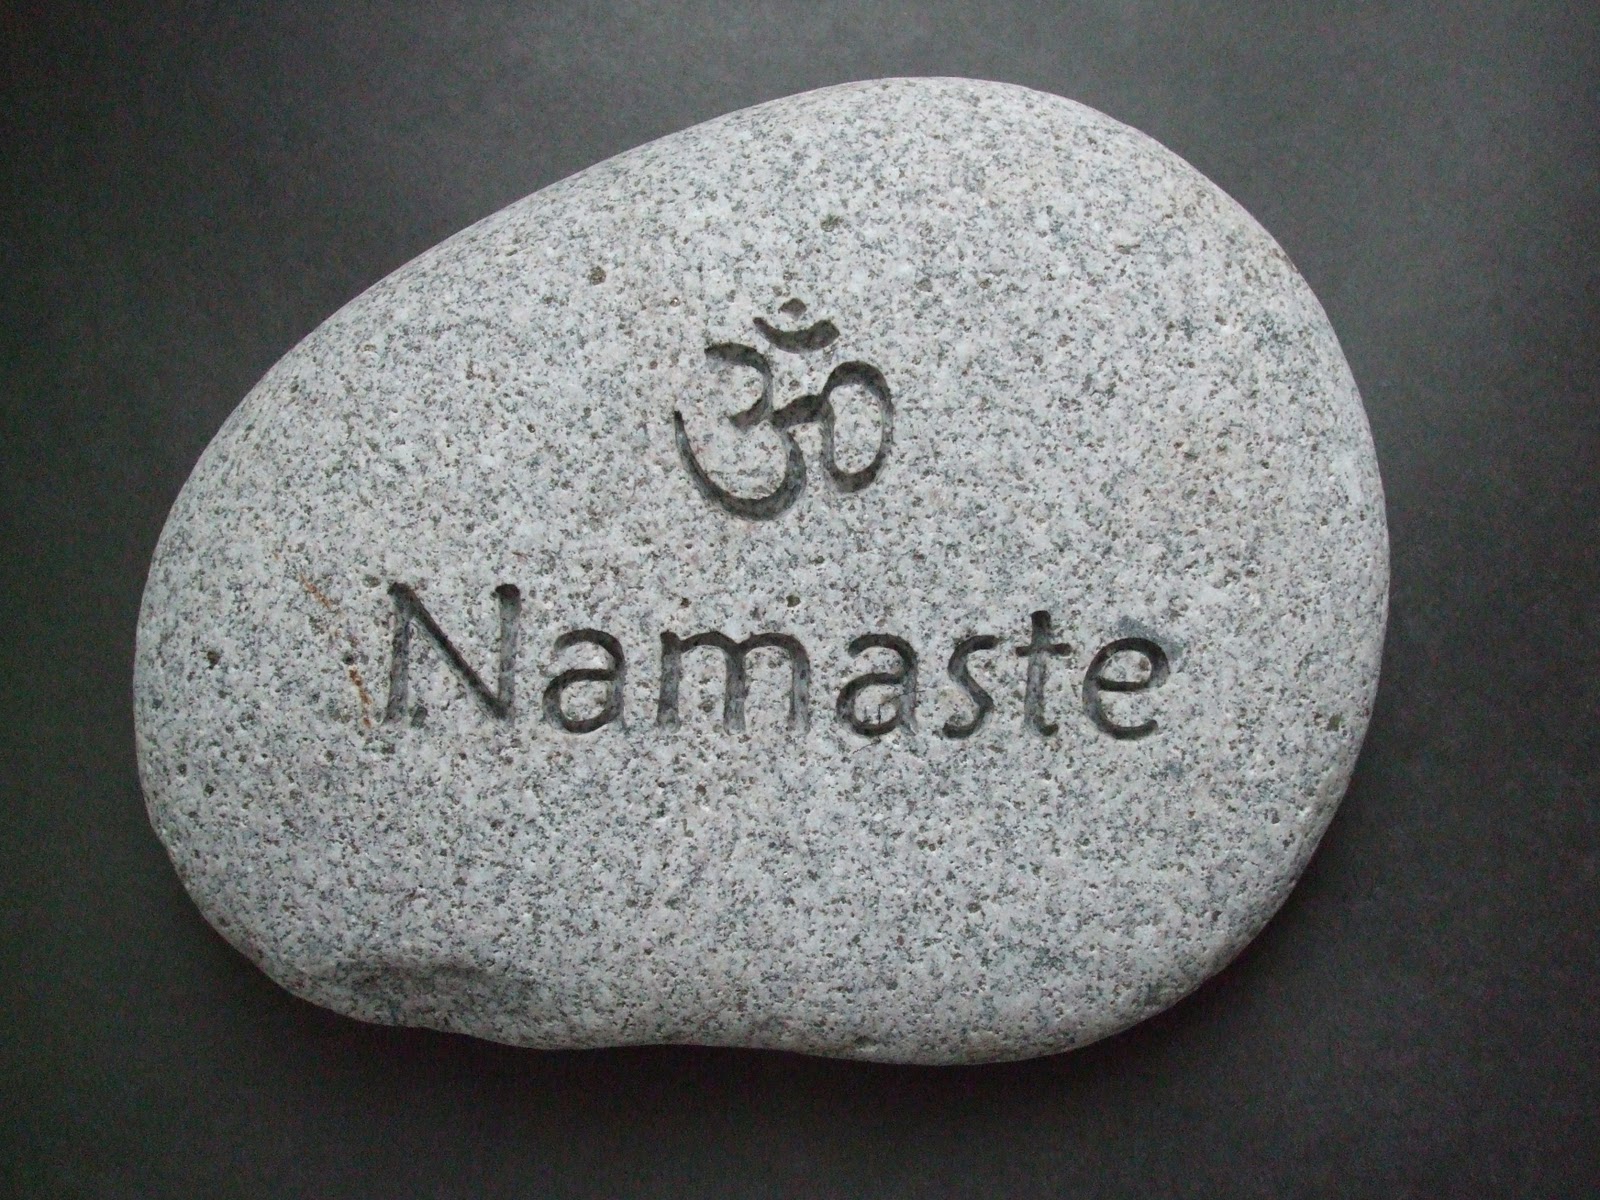 Namaste перевод. Намасте. Значок Намасте. Намасте перевод. Намасте Приветствие.